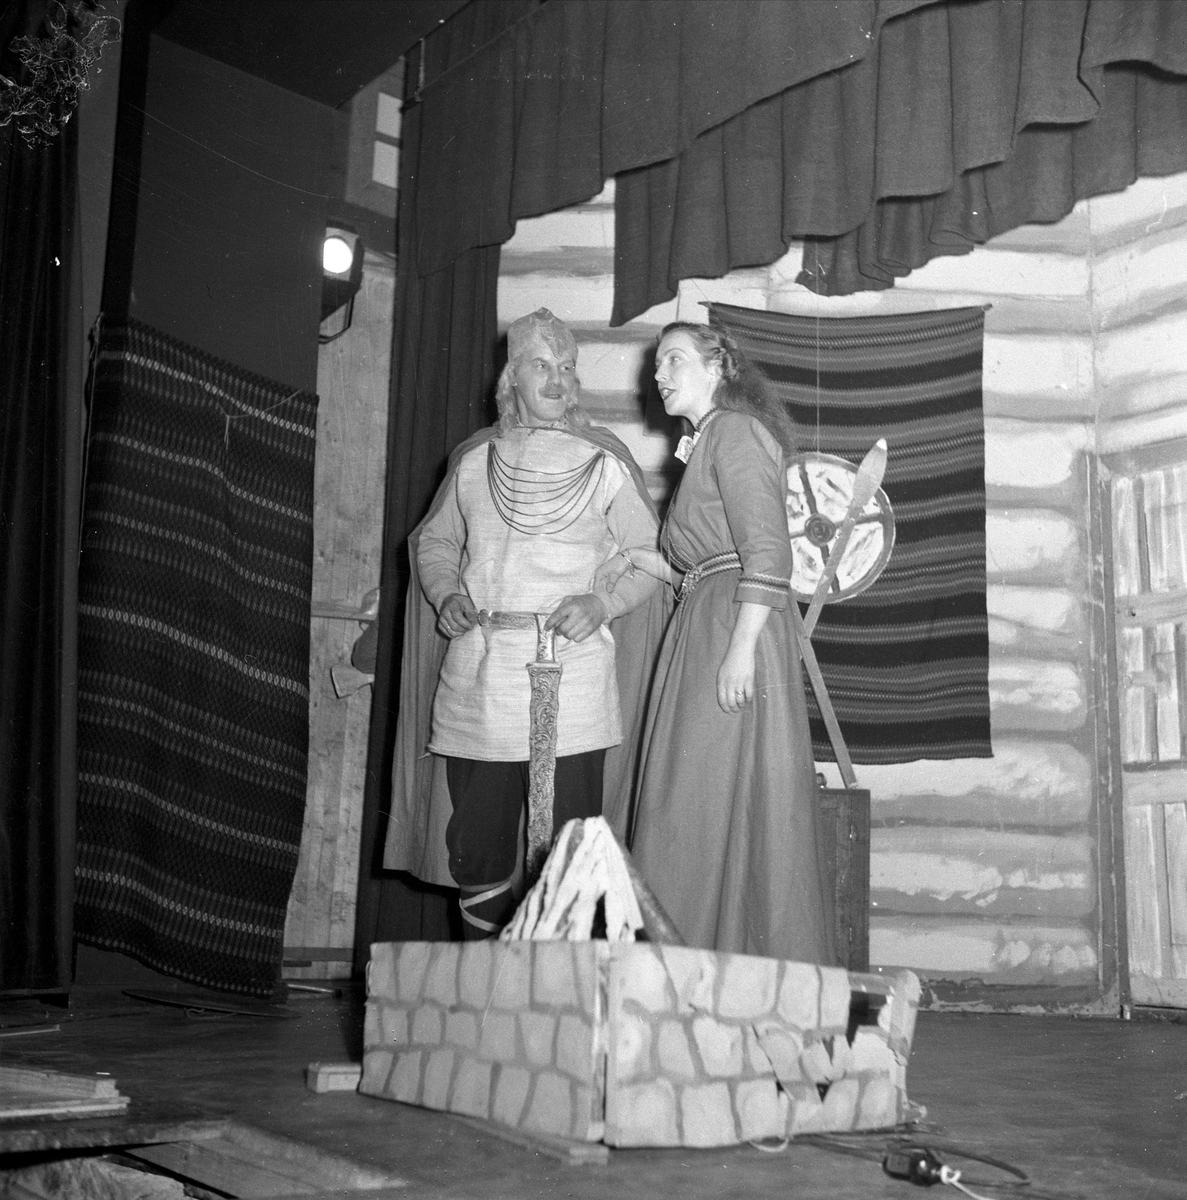 Mann og kvinne opptrer 19.11.1954. Bygdelag.